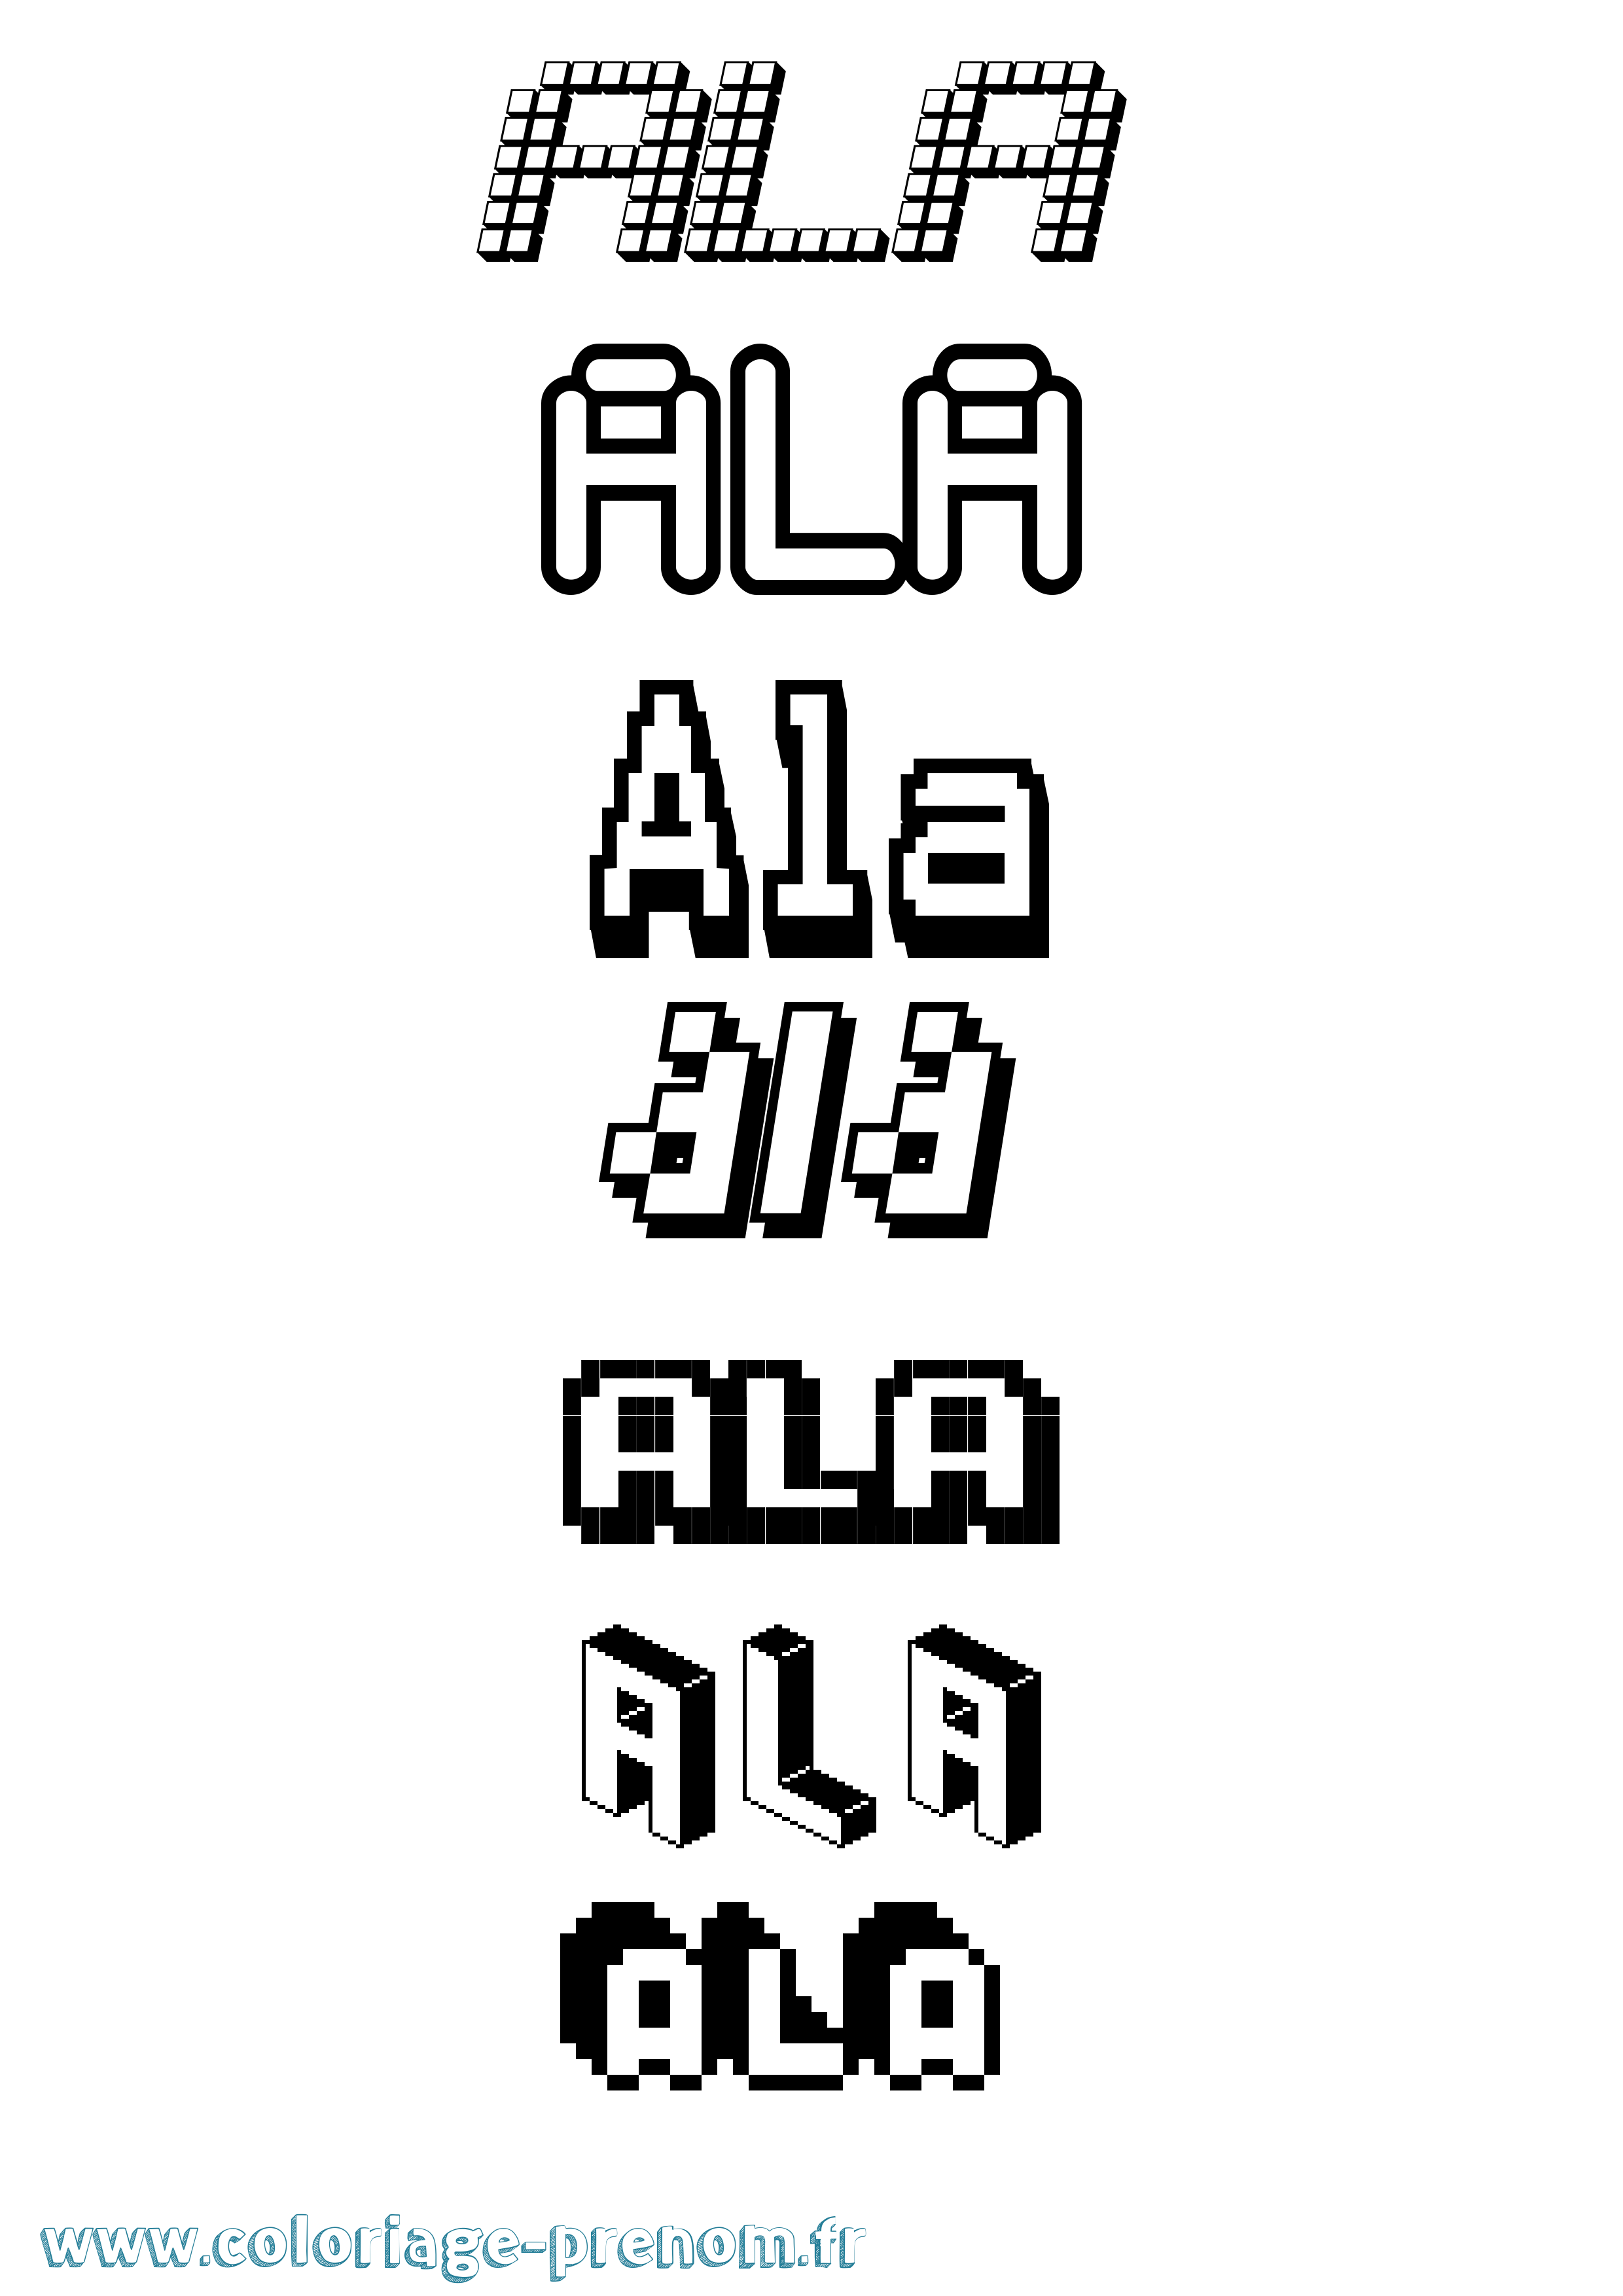 Coloriage prénom Ala Pixel